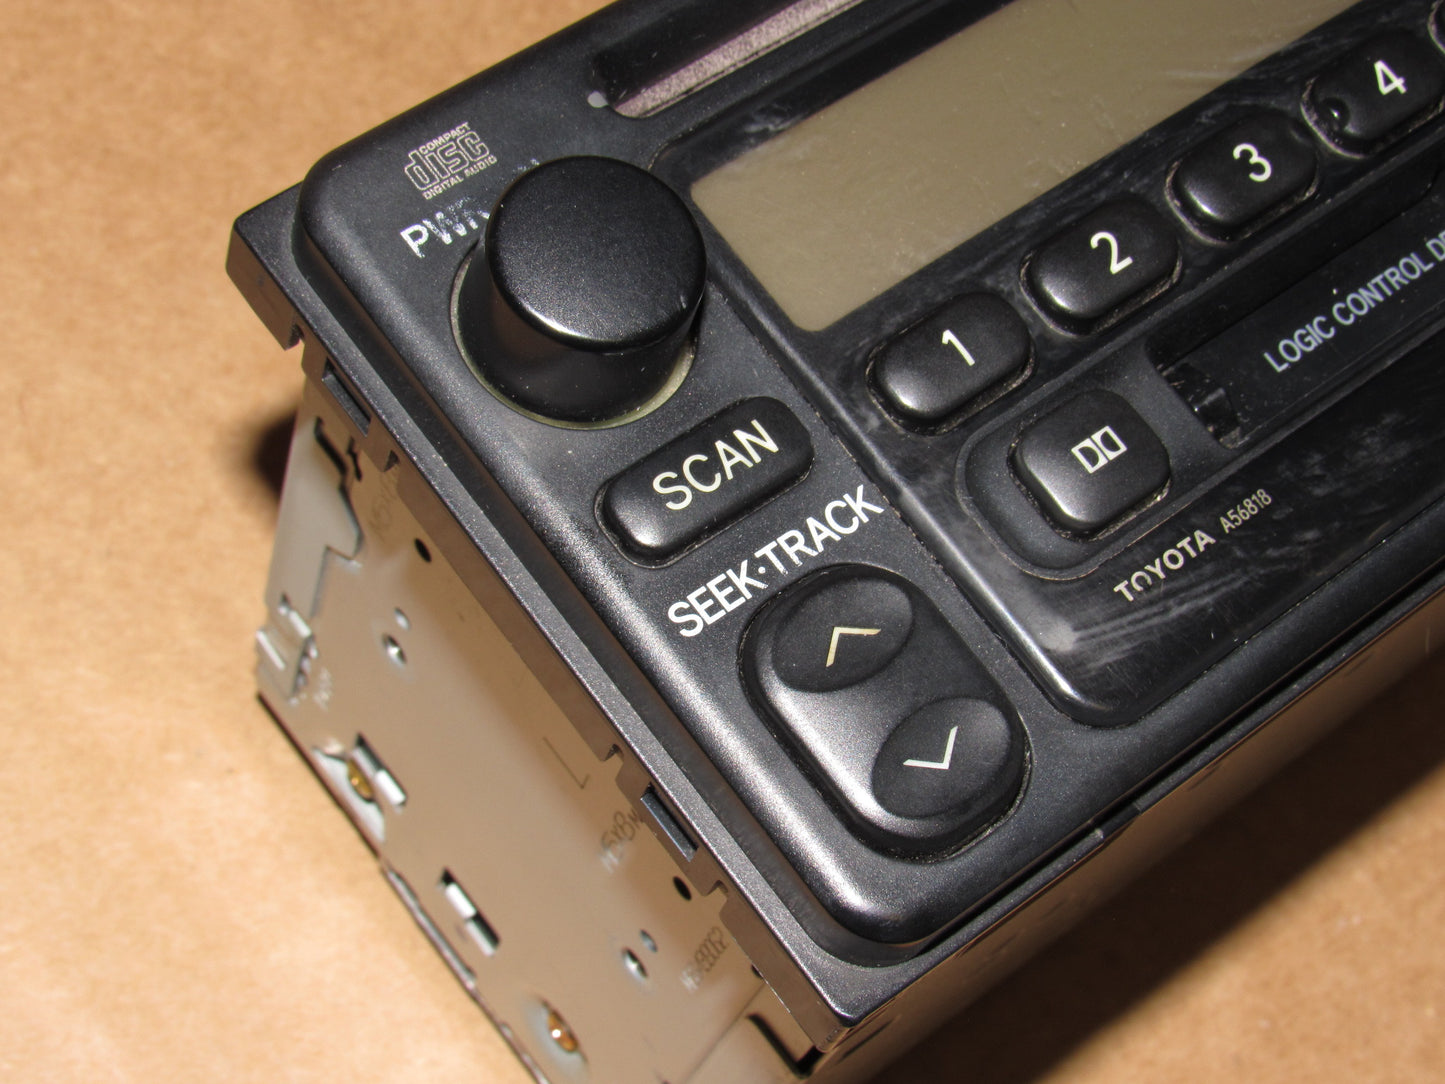 01 02 03 Toyota Rav4 OEM Stereo AM FM Radio CD & Cassette Player Unit